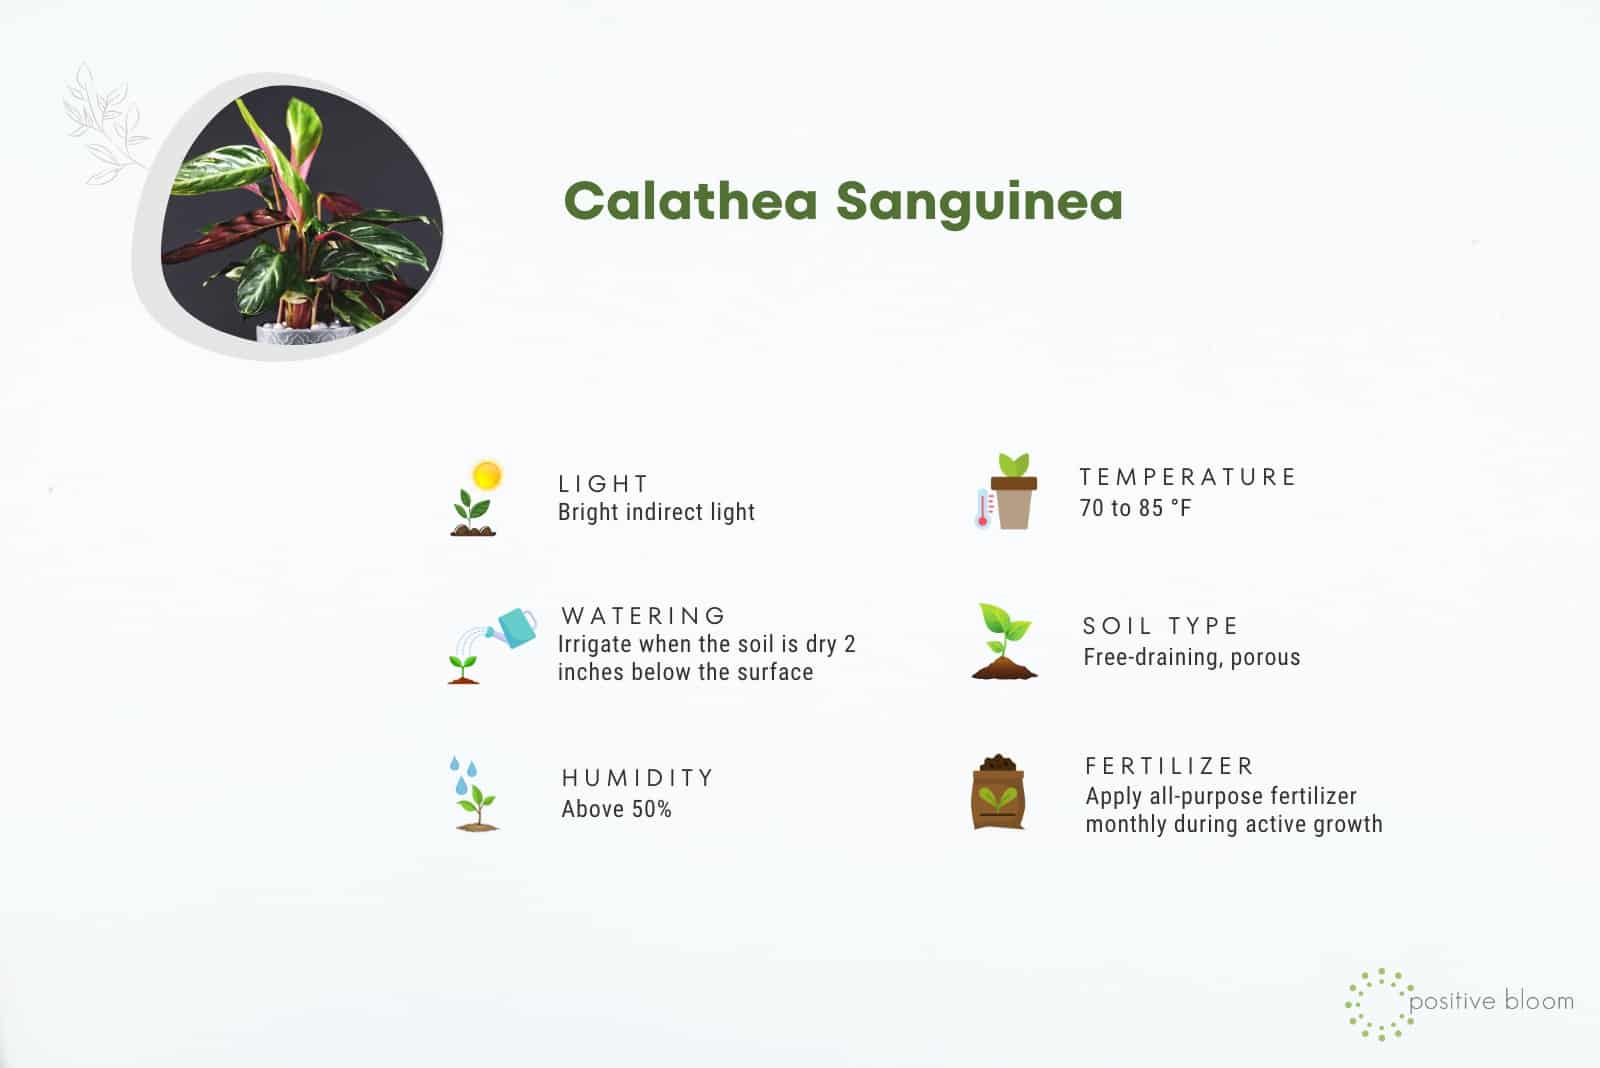 Calathea Sanguinea Care Guide